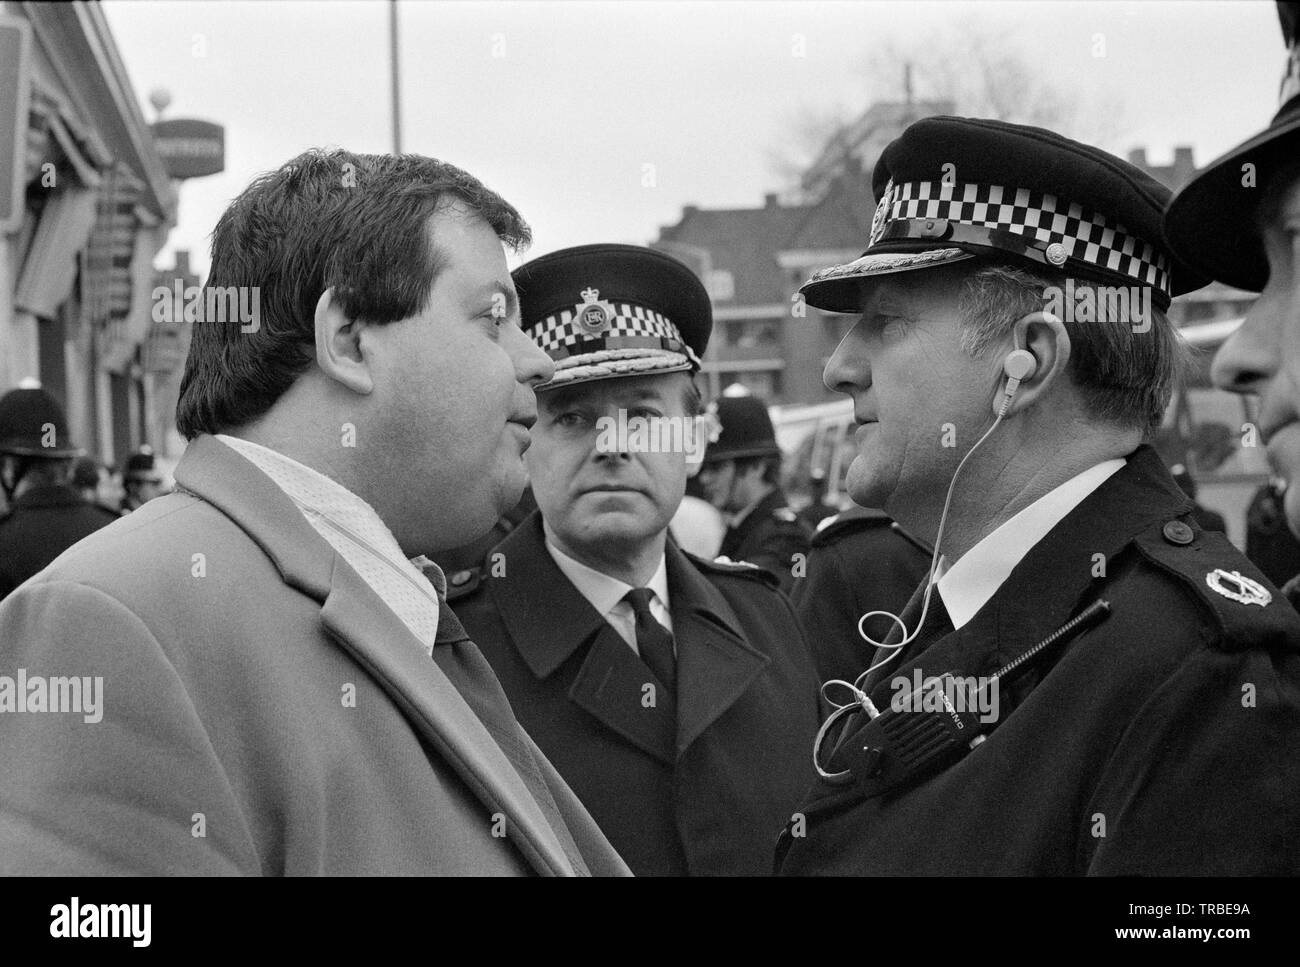 1980. Einen Marsch von der Nationalen Front, einer britischen Rechts faschistischen Partei, in Camberwell New Road, London, durch die dann Führer Martin Webster, der gesehen wird, im Gespräch mit der Polizei geleitet wird. Stockfoto